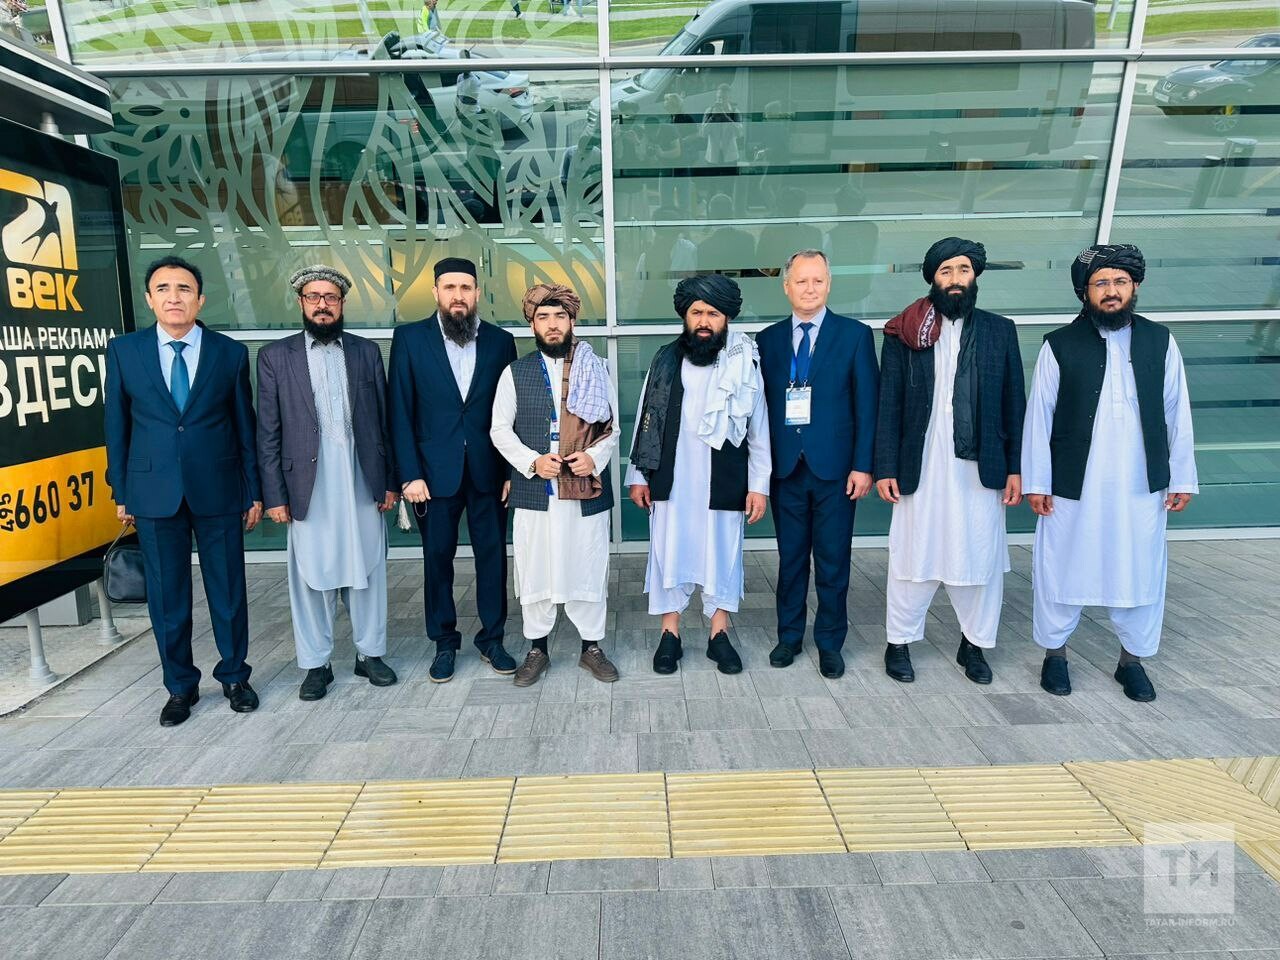 Делегация Афганистана прибыла в Казань для участия в форуме министров образования